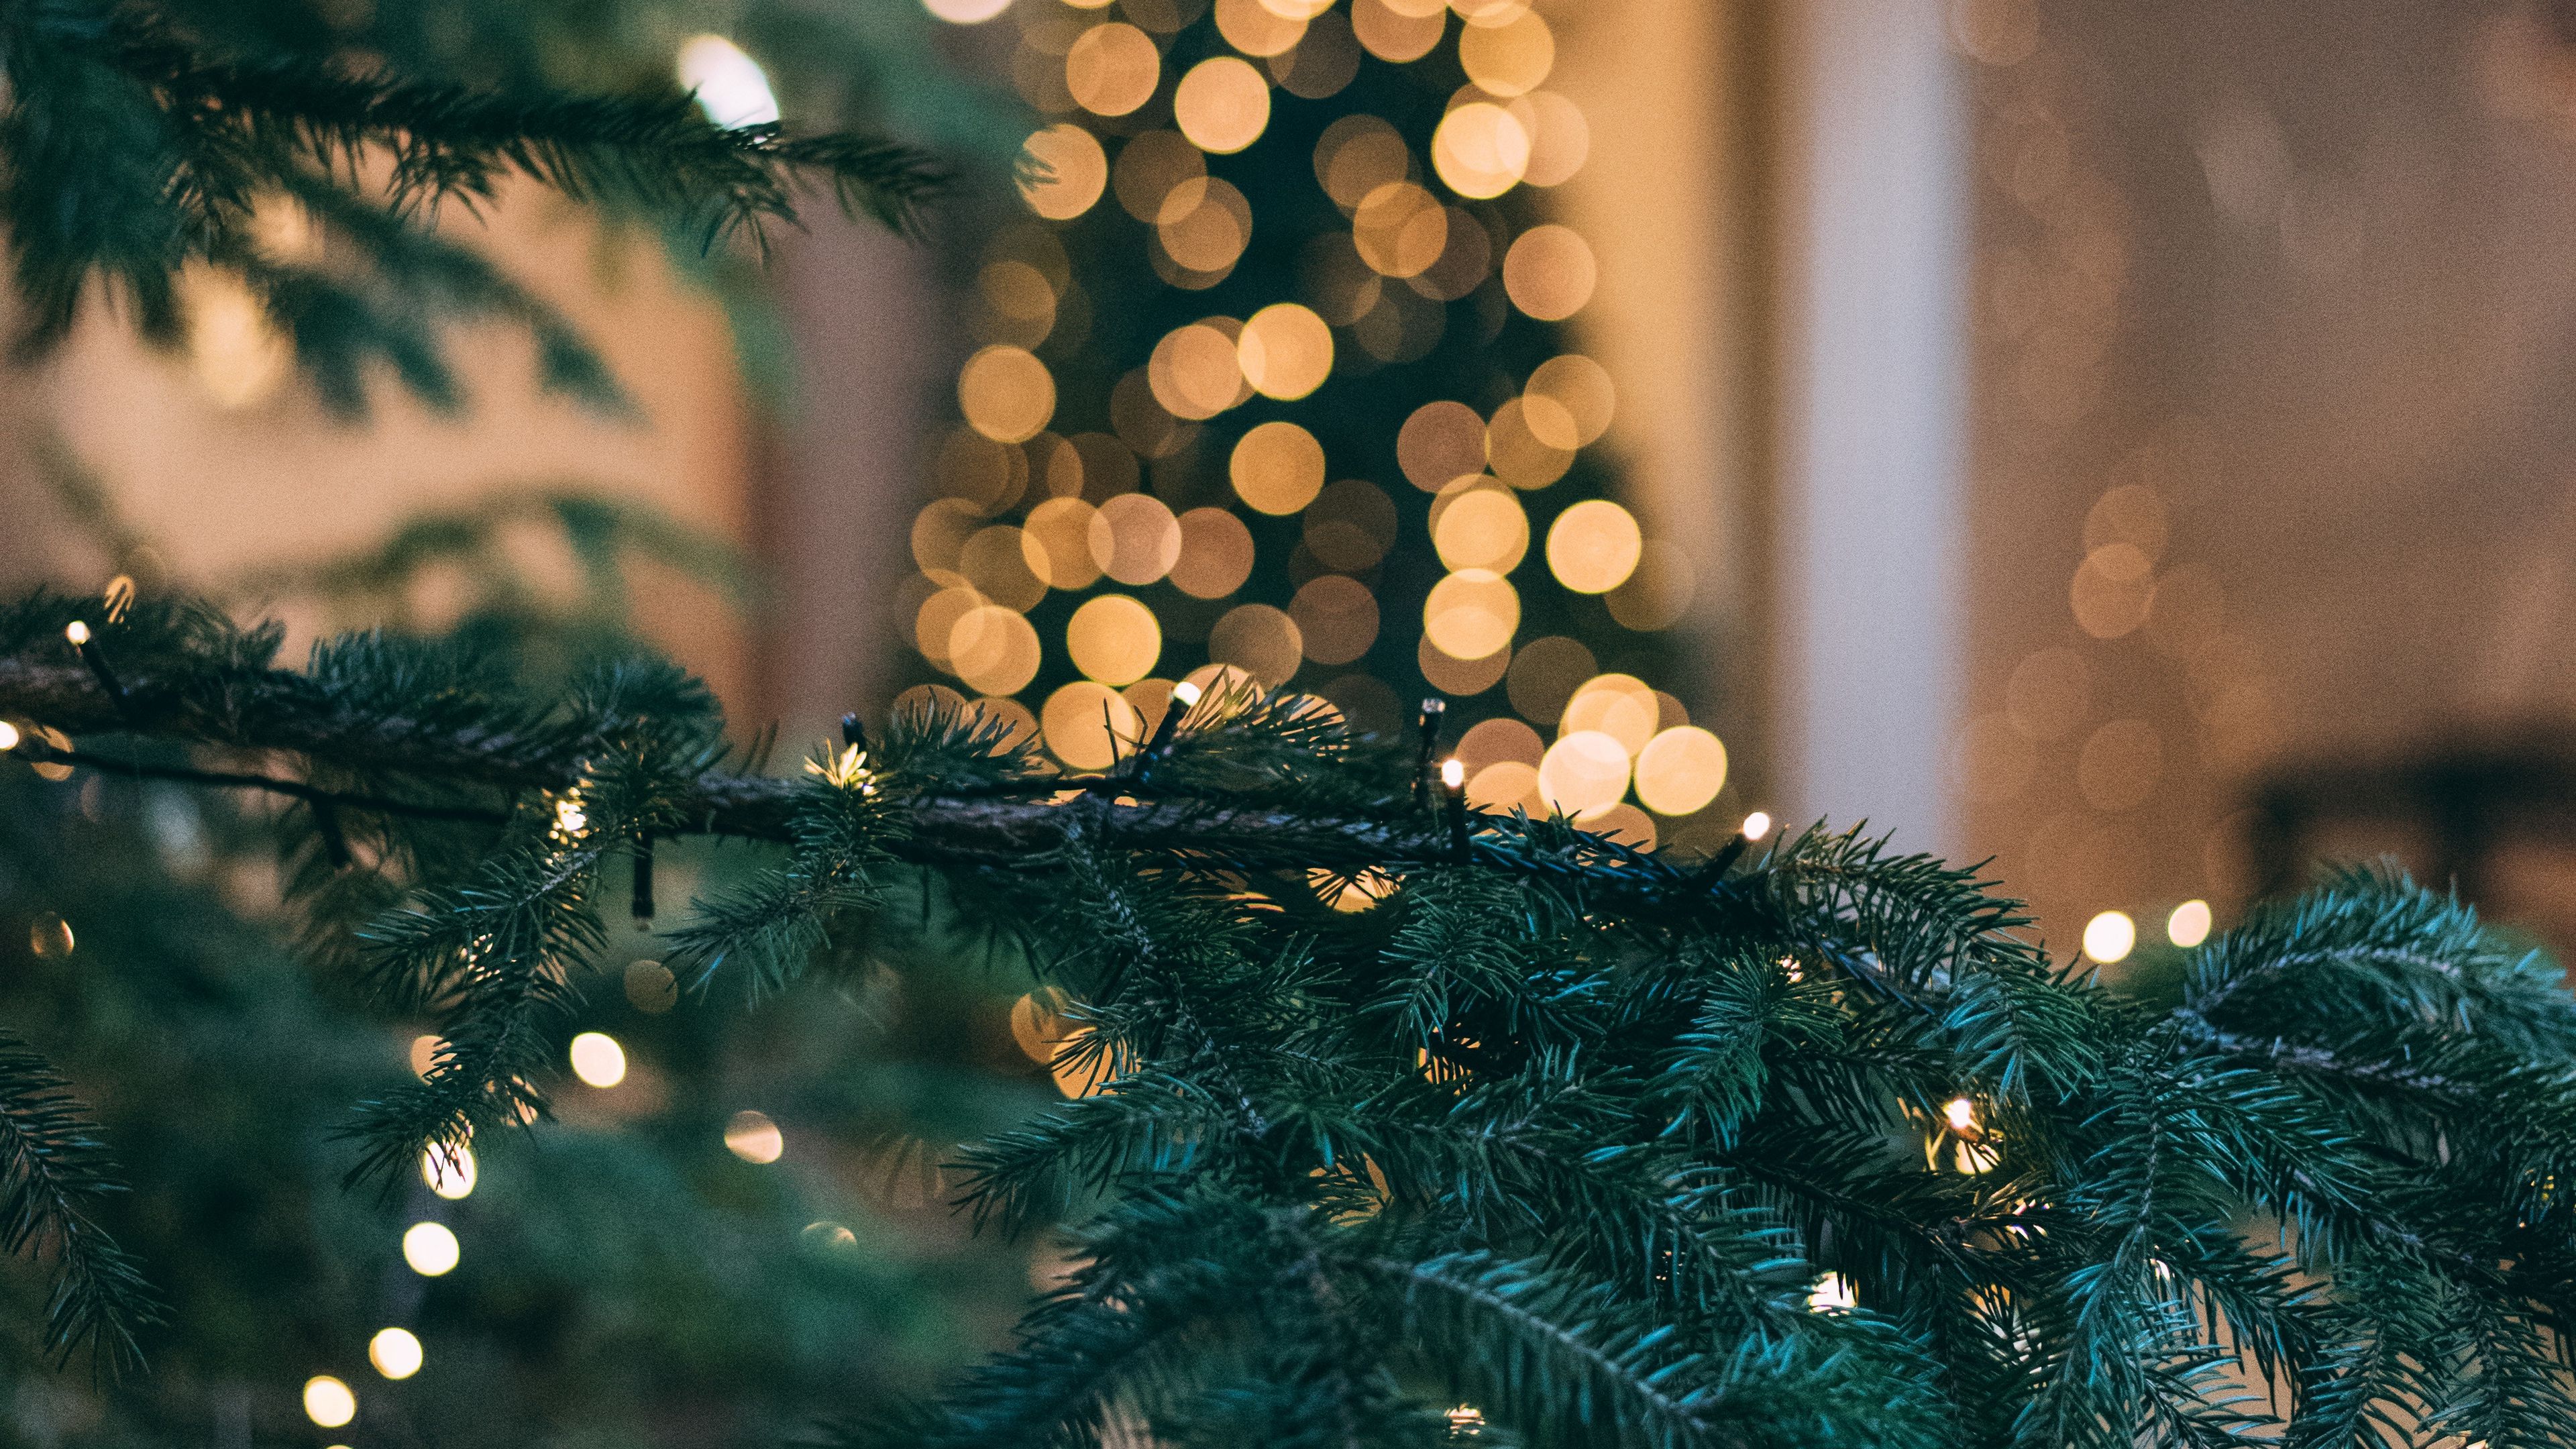 Những hình nền cây thông Giáng Sinh rực rỡ sẽ khiến cho bạn cảm thấy hào hứng và phấn chấn hơn bao giờ hết trong mùa lễ này. Cùng tải về những hình nền đầy màu sắc và sinh động này để tạo cho không gian làm việc của bạn được tràn đầy niềm vui!